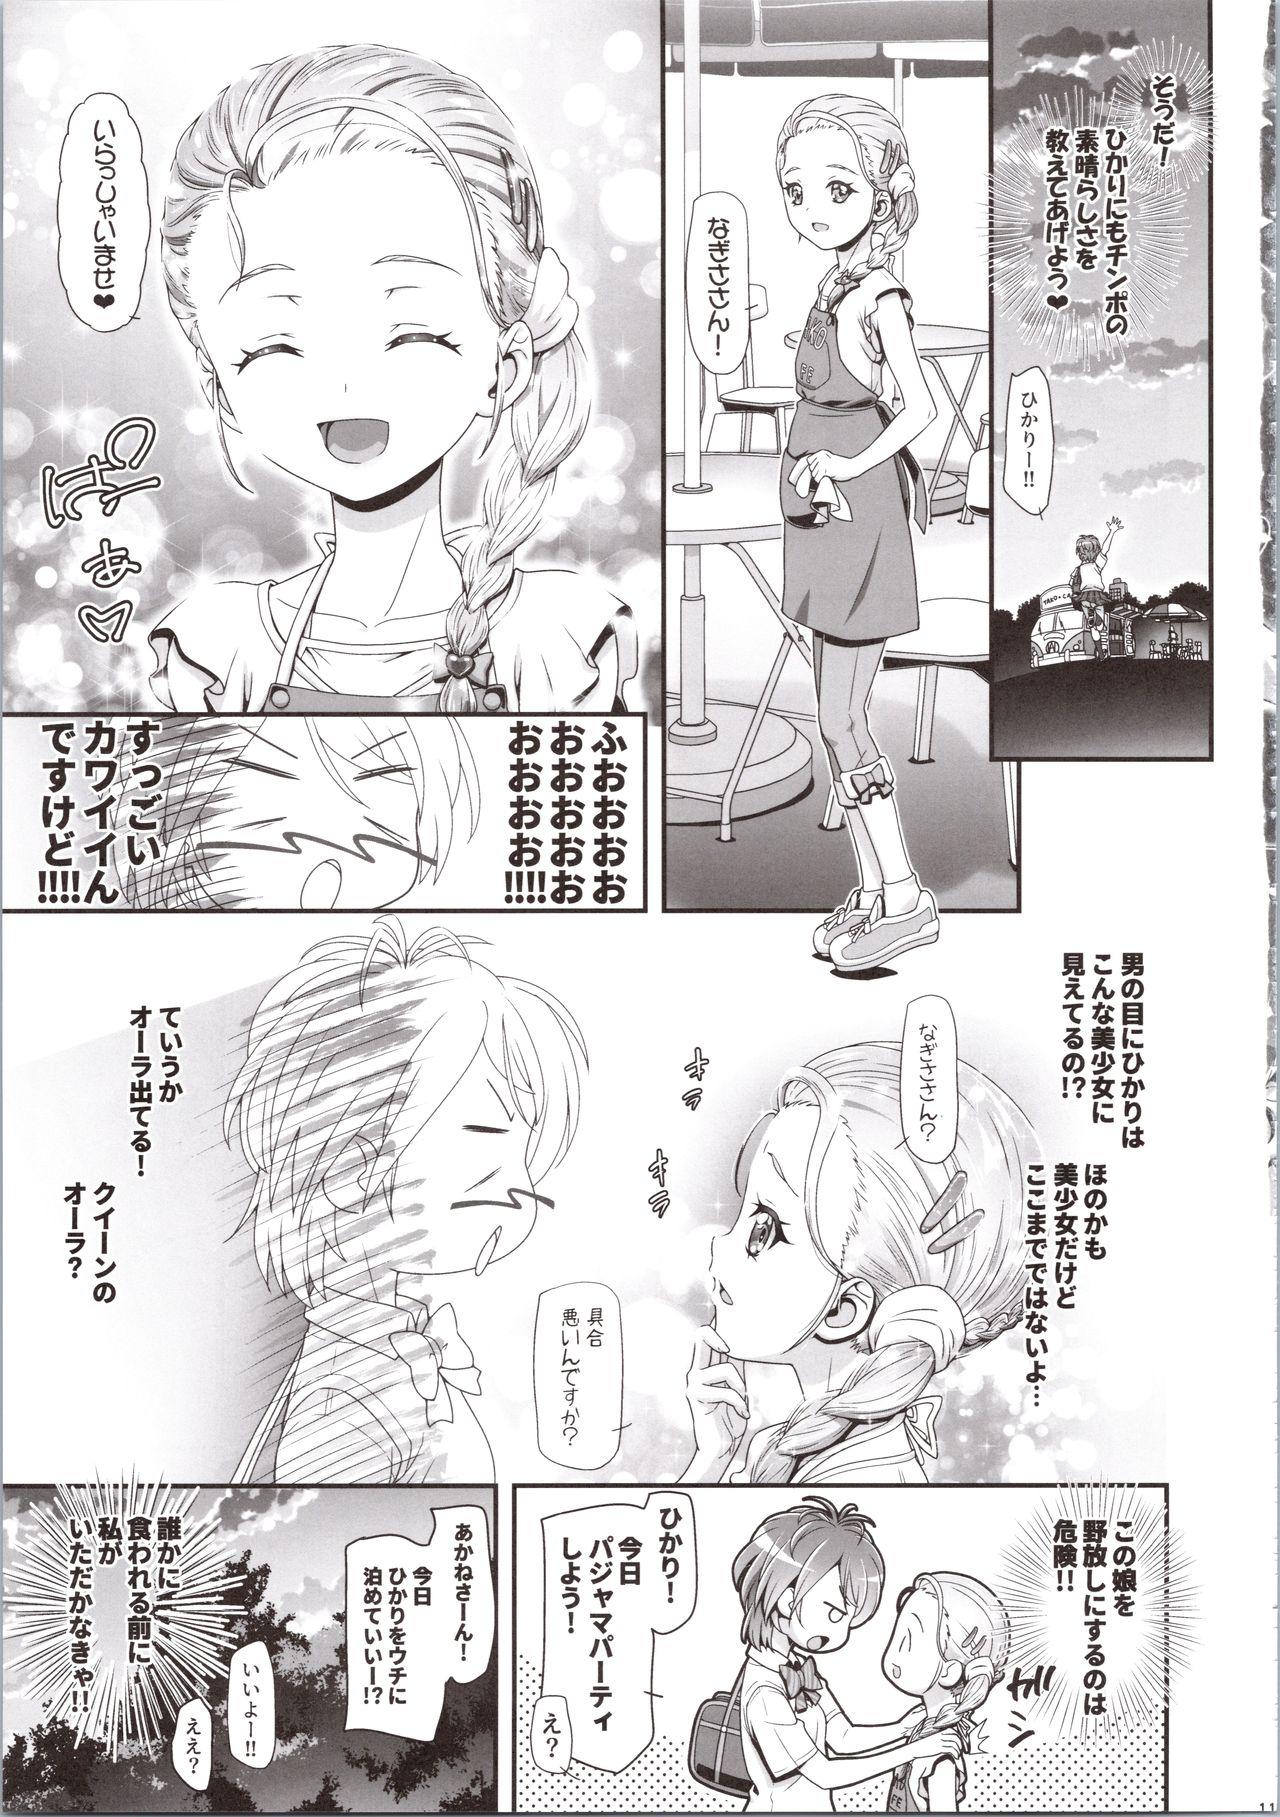 Emo Futari wa Puni Cure Max Heart - Futari wa pretty cure Hard - Page 11